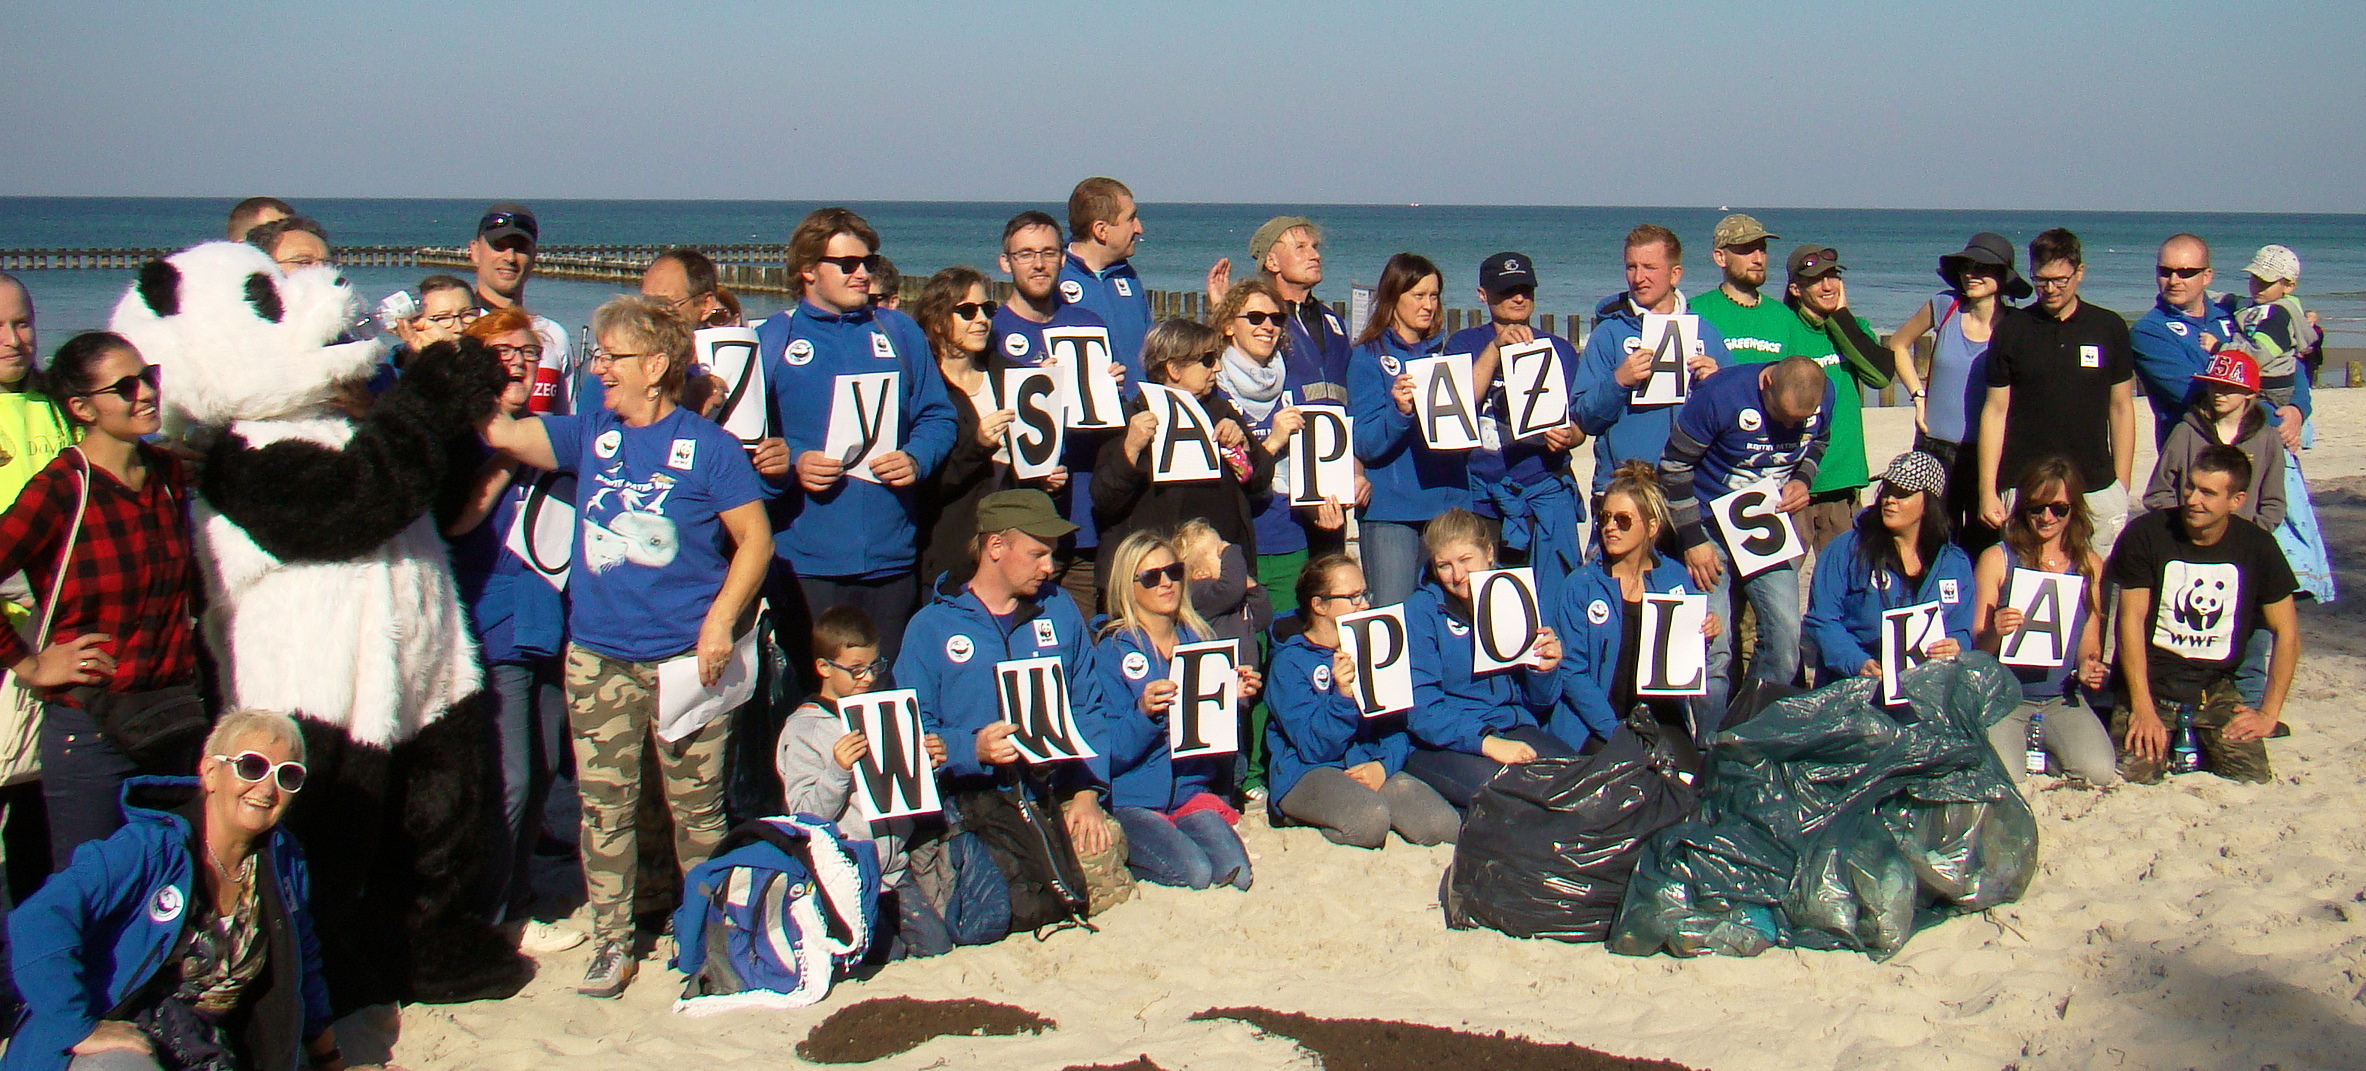 37 1 - Akcja "Czyste plaże" WWF Polska. Jest coraz lepiej! (+zdjęcia)